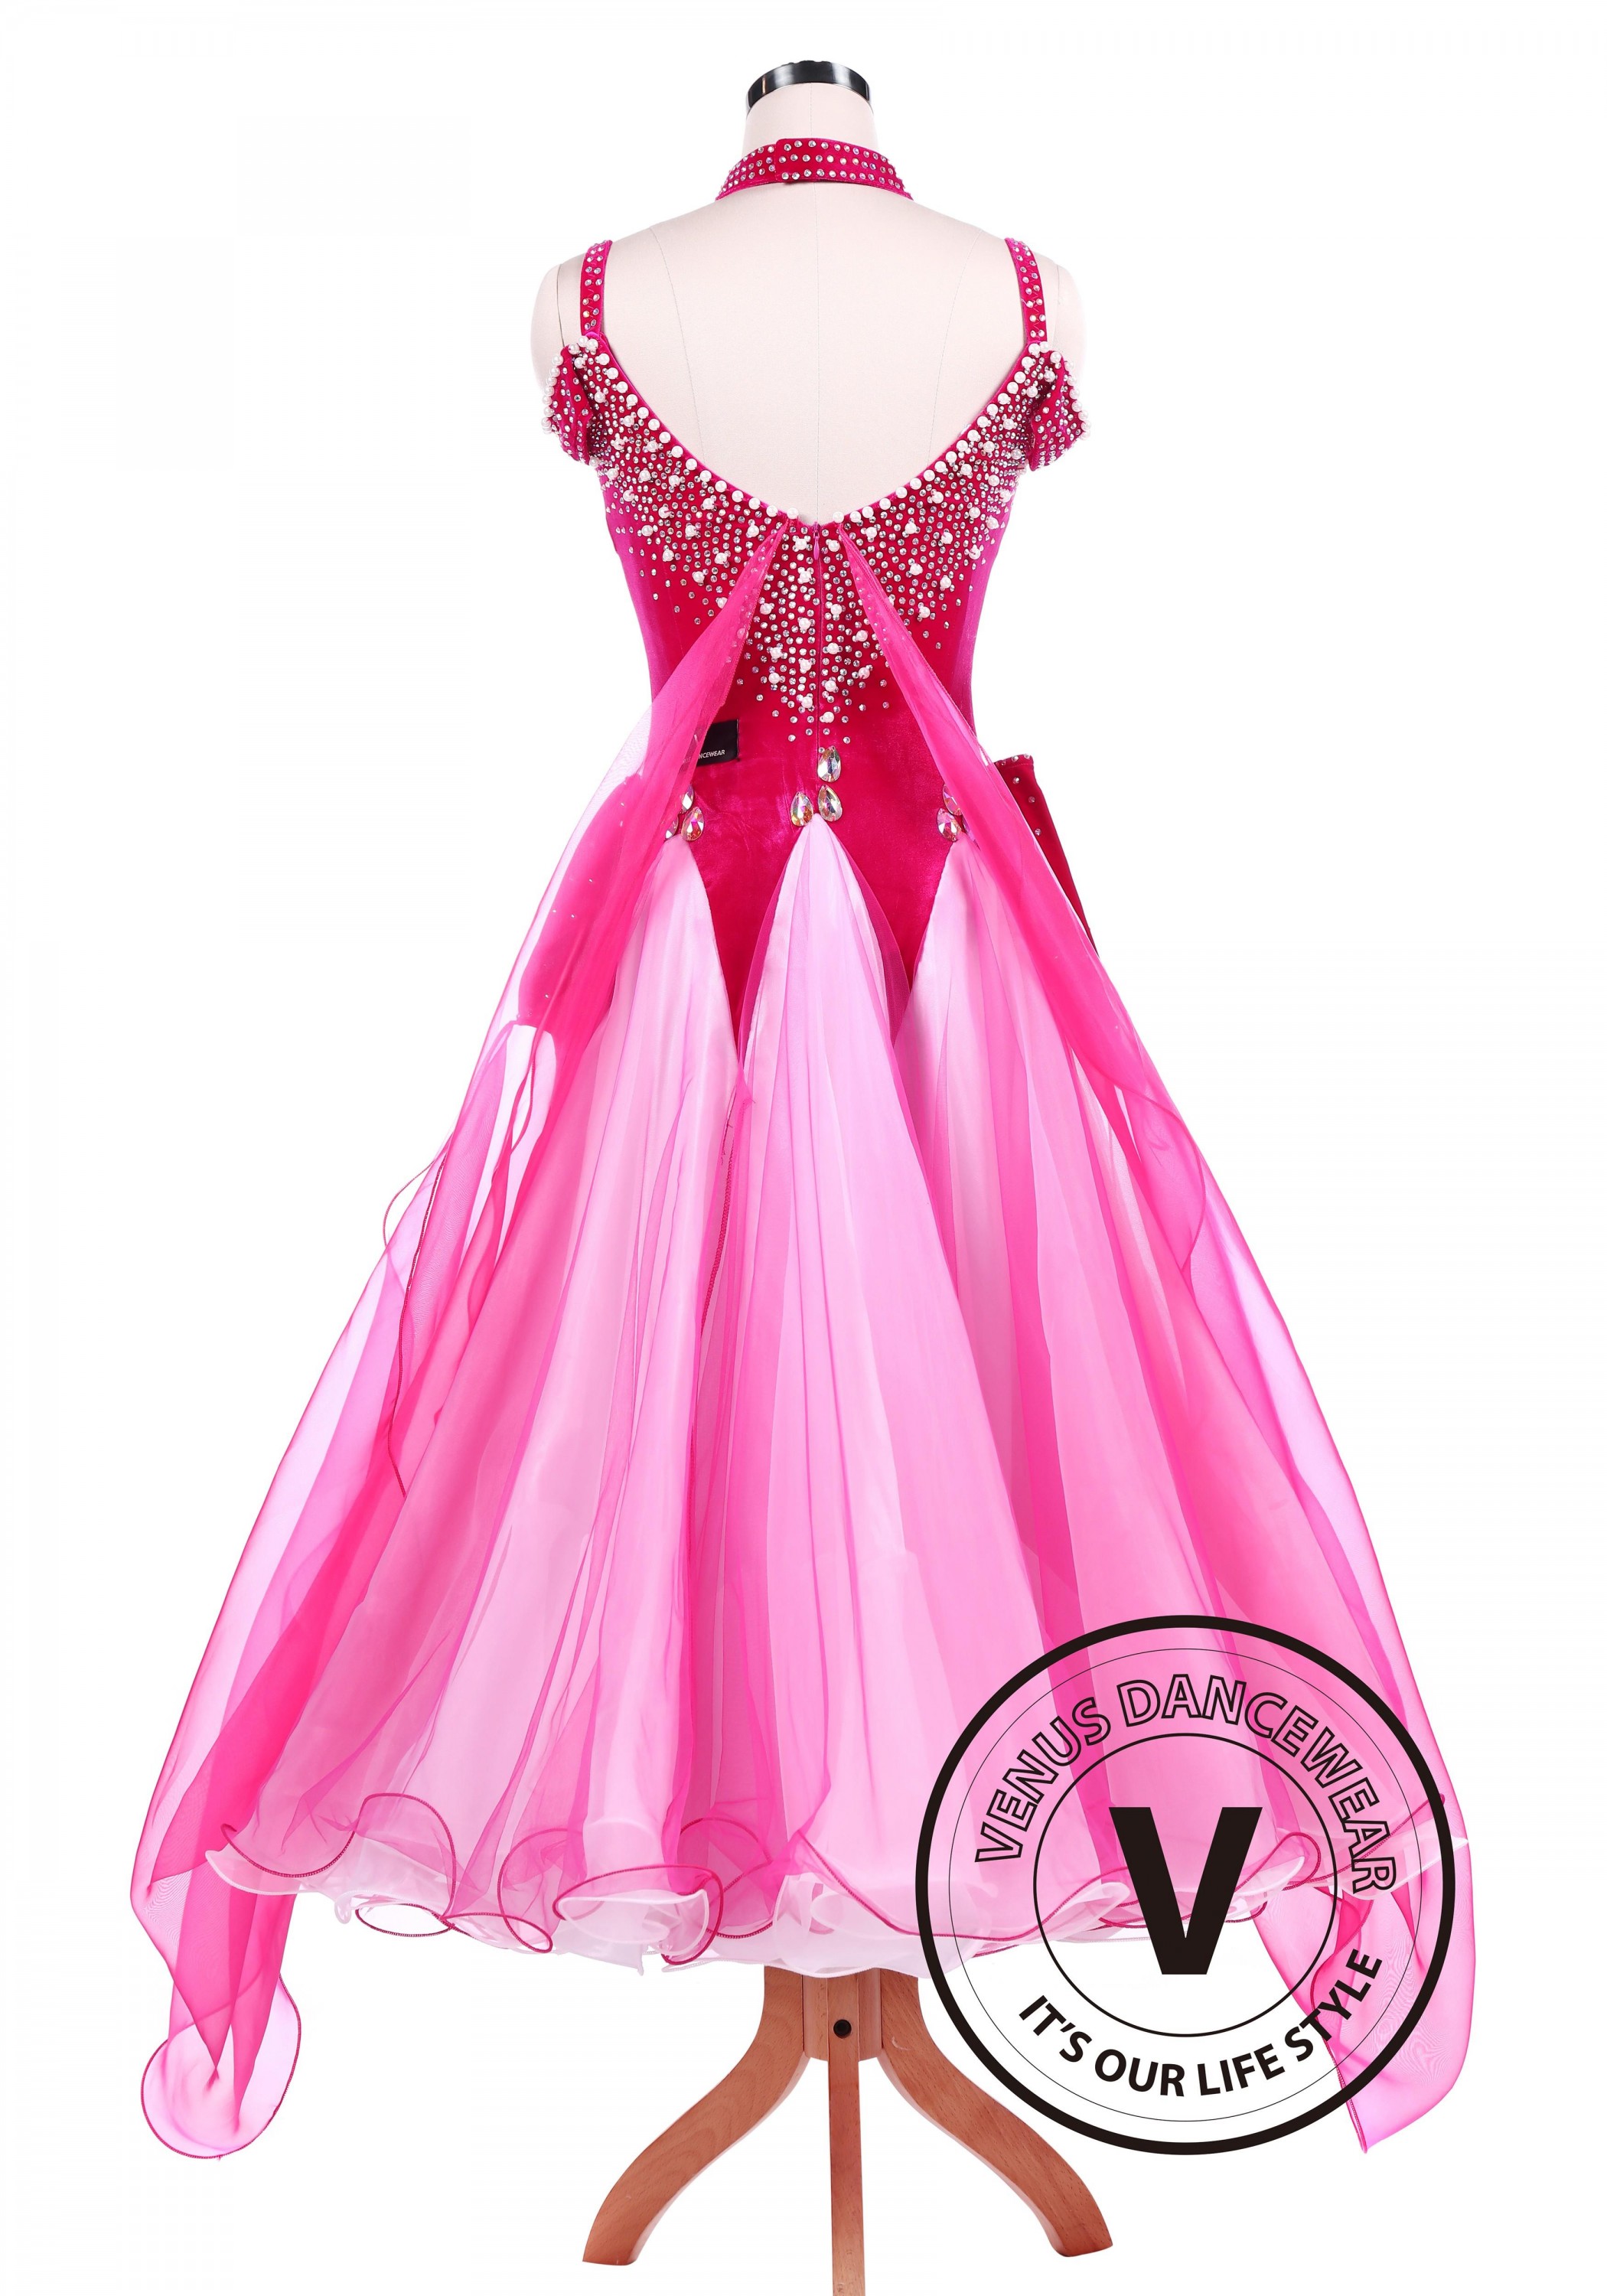 Hot Pink Ballroom Standard Competition Dance Dress - Venus Dancewear ...